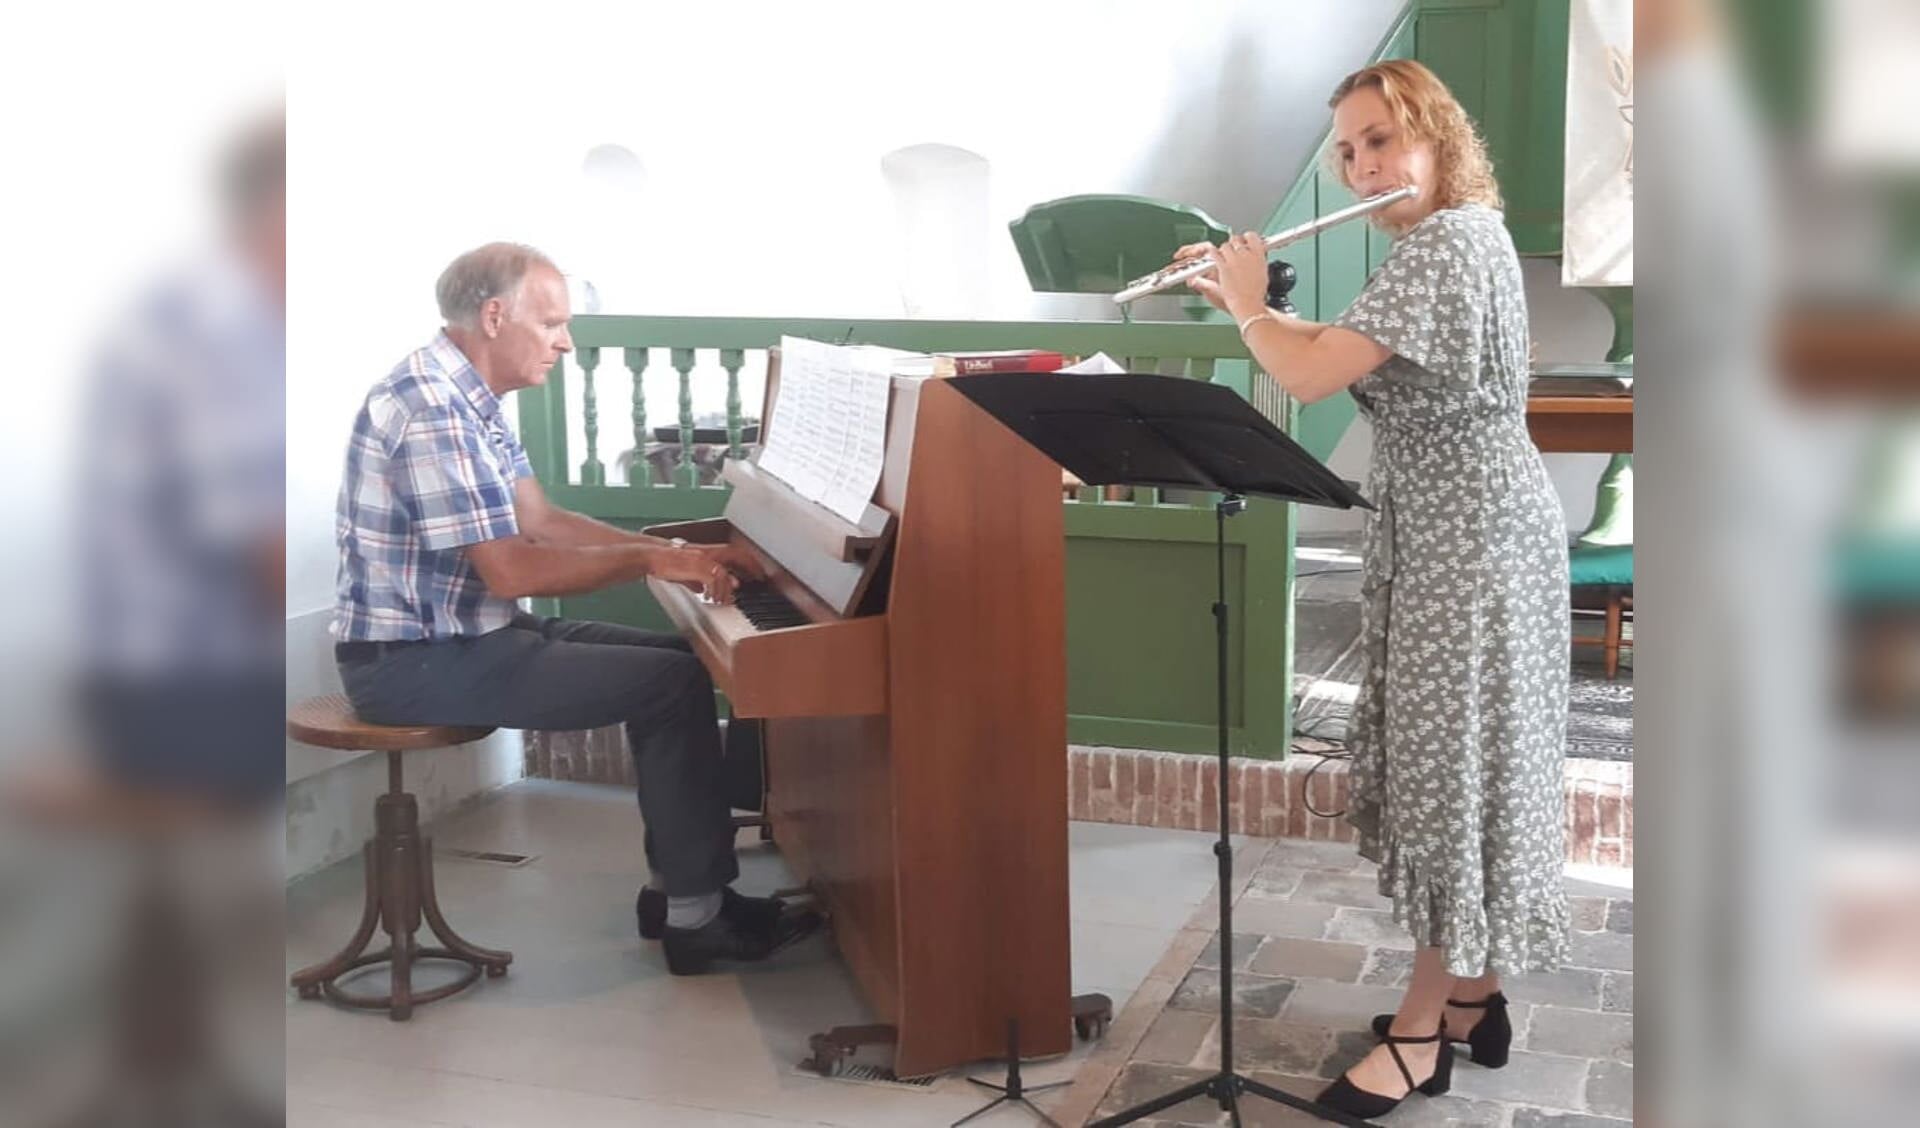 Dwarsluitiste Ilse Terpstra en pianist/organist Piet de Jong geven zondagmiddag 26 november a.s. een concert in de kerk van Hegebeintum  